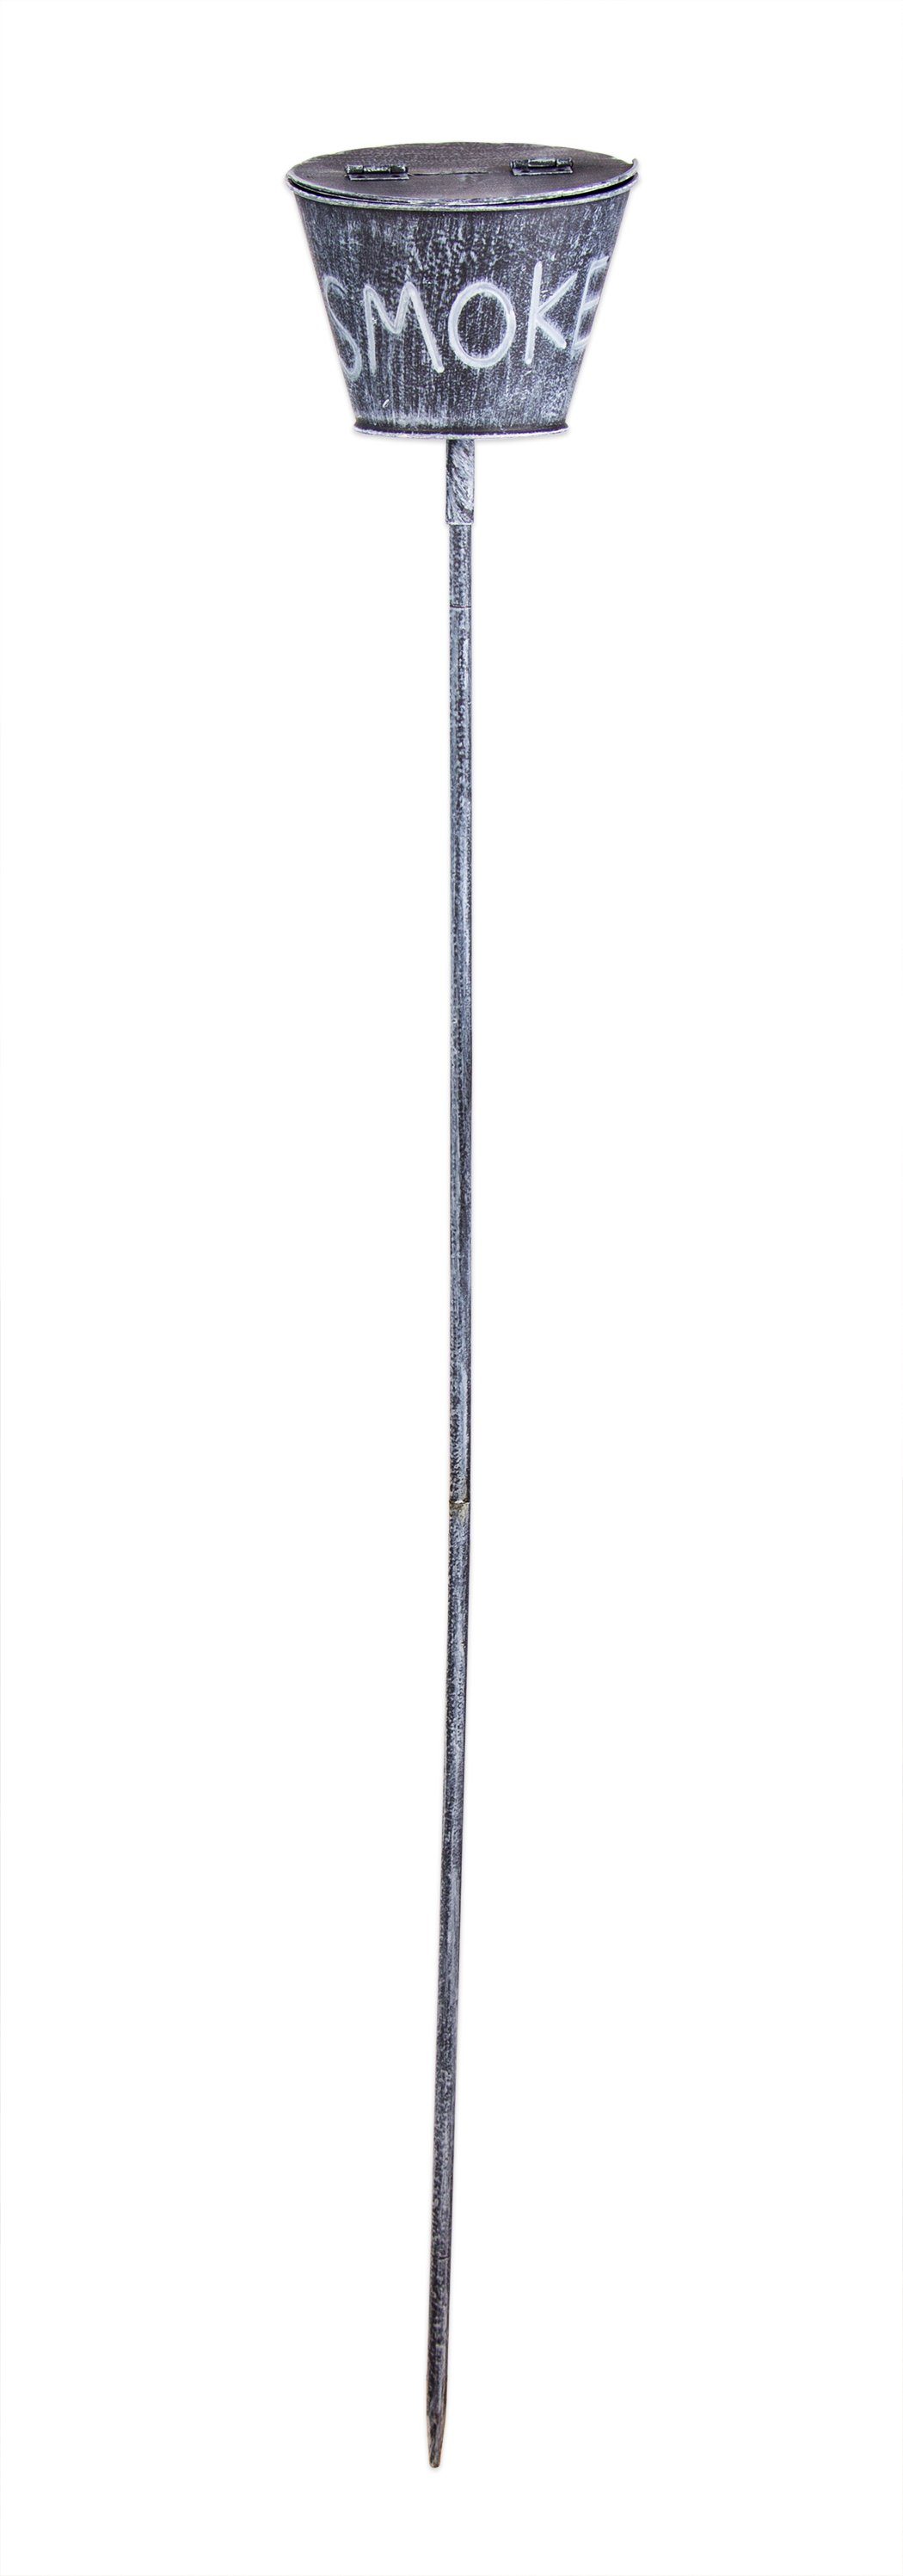 BigDean Aschenbecher Sturmaschenbecher für draußen Blumentopf-Look 110 cm Erdspieß Anthrazit